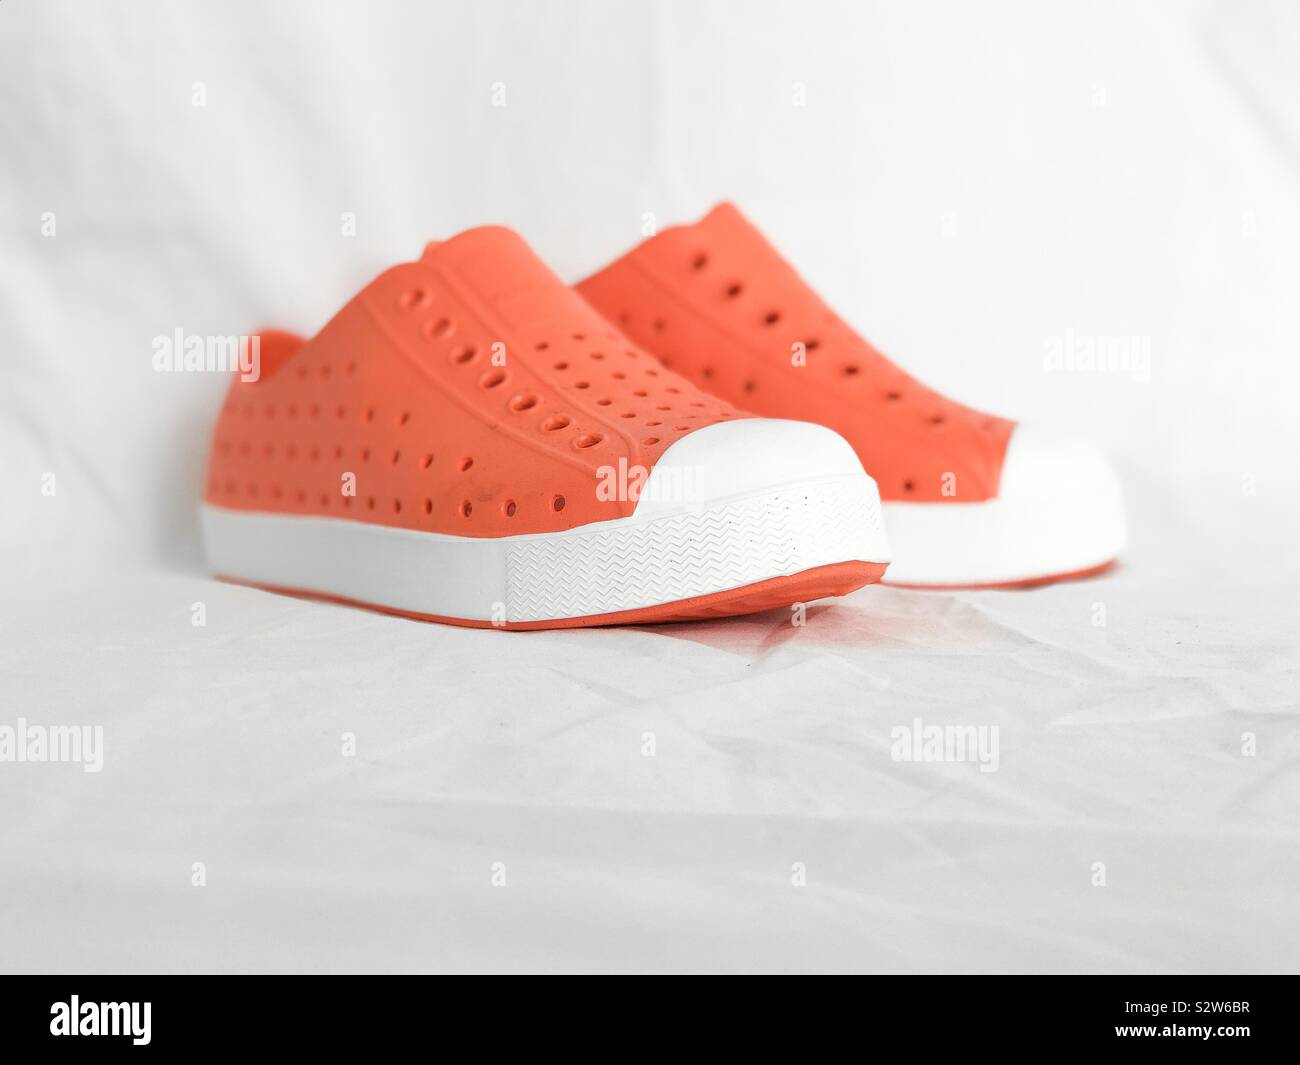 Native shoes immagini e fotografie stock ad alta risoluzione - Alamy